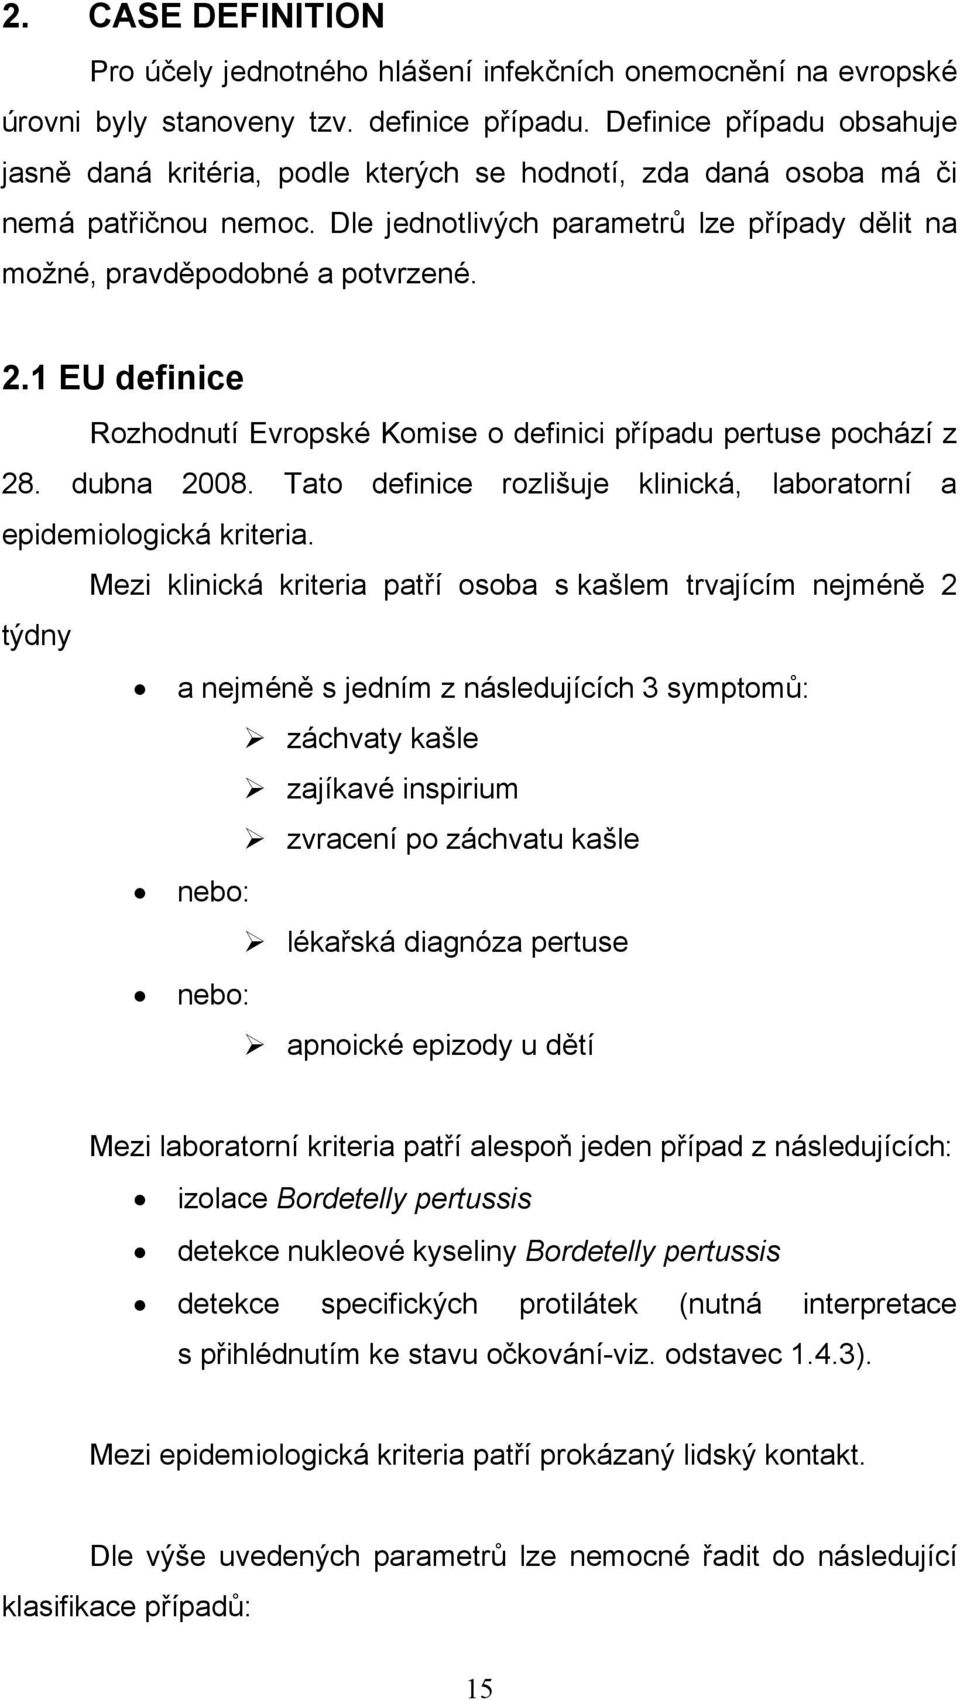 1 EU definice Rozhodnutí Evropské Komise o definici případu pertuse pochází z 28. dubna 2008. Tato definice rozlišuje klinická, laboratorní a epidemiologická kriteria.